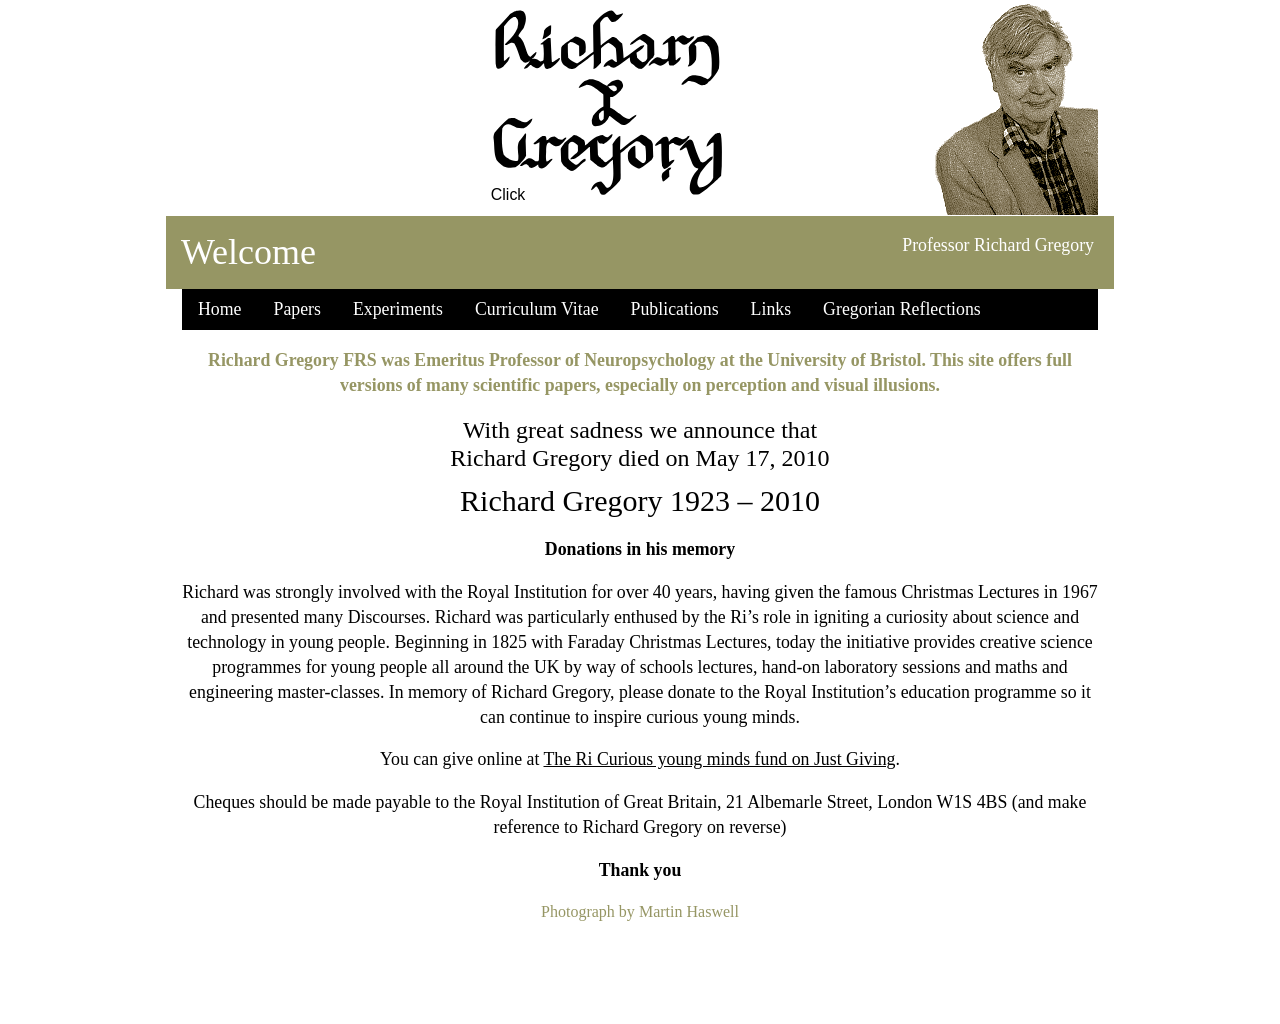 richardgregory.org